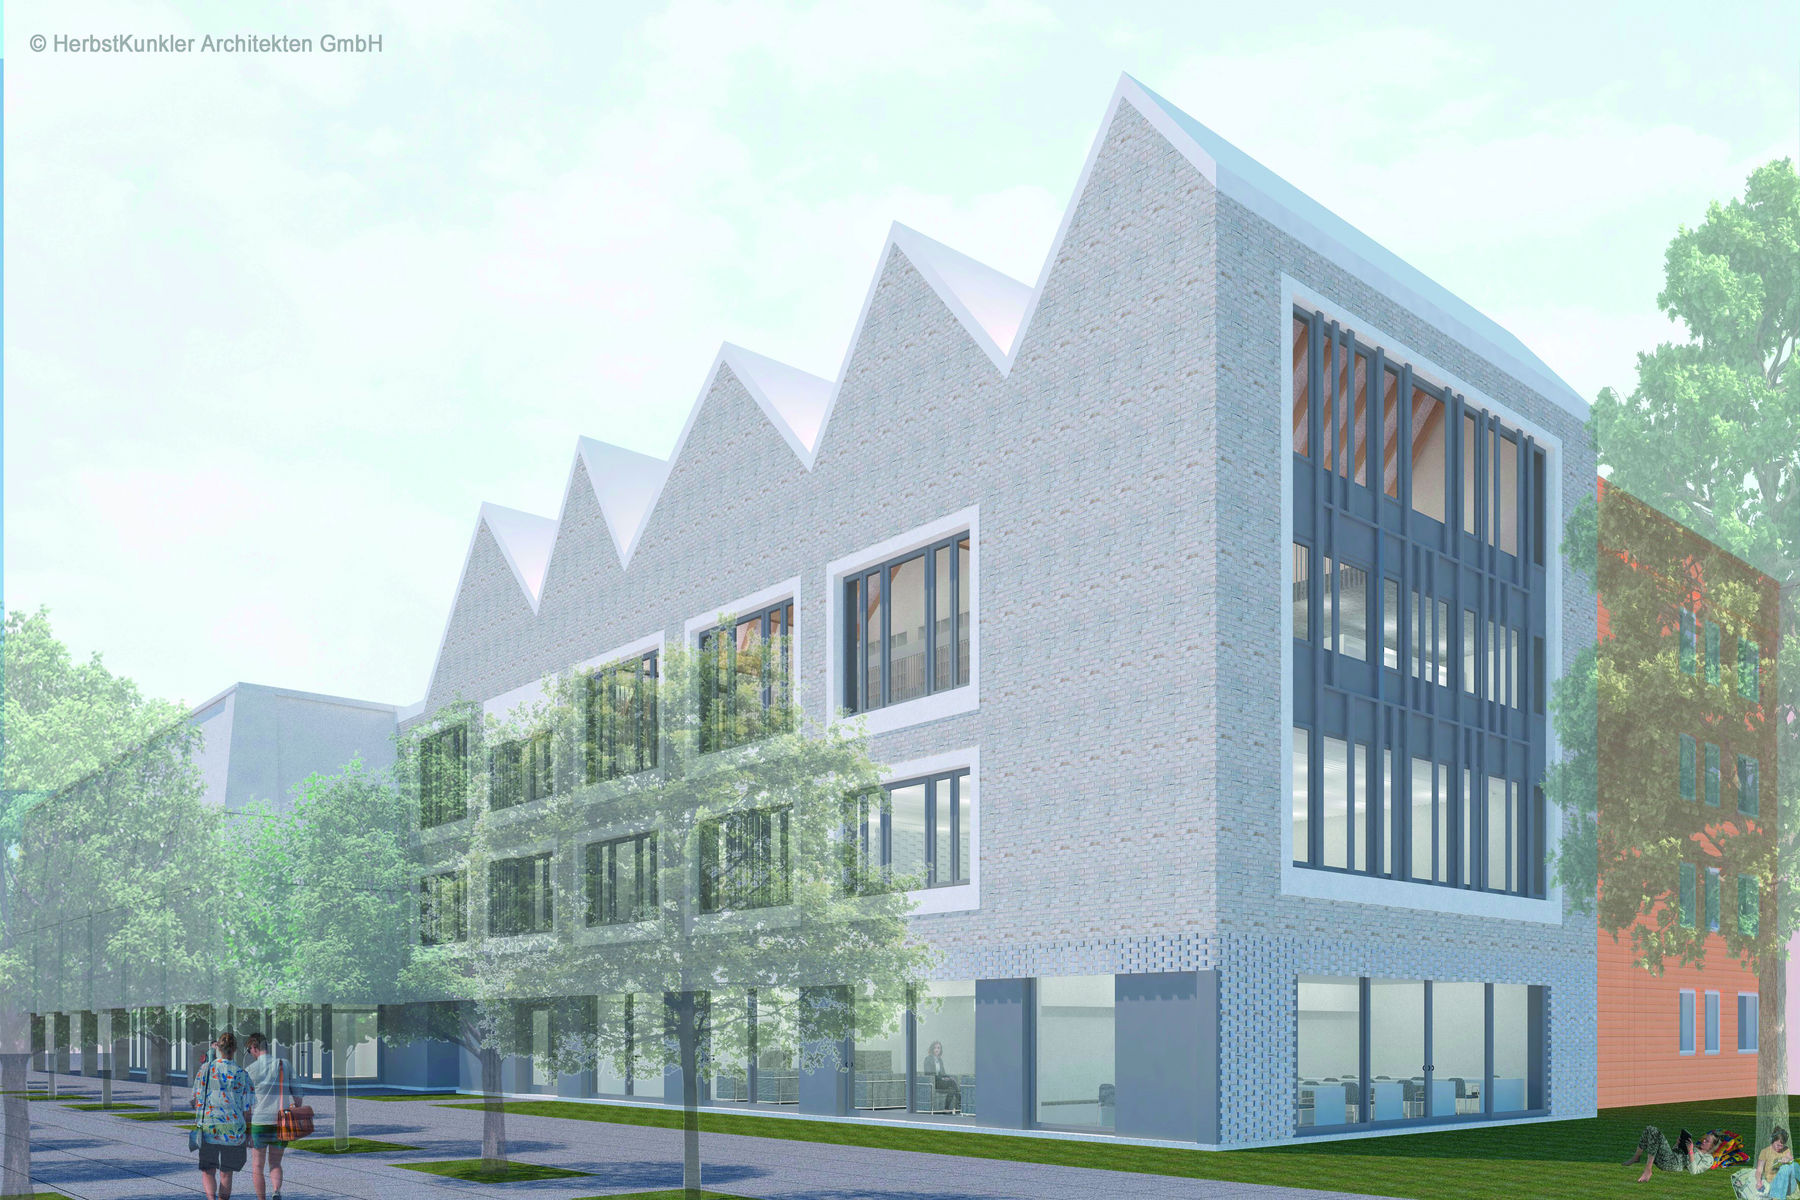 Animation der Hochschule mit dem geplanten Erweiterungsbau der Bibliothek © 2022 HerbstKunkler Architekten GmbH